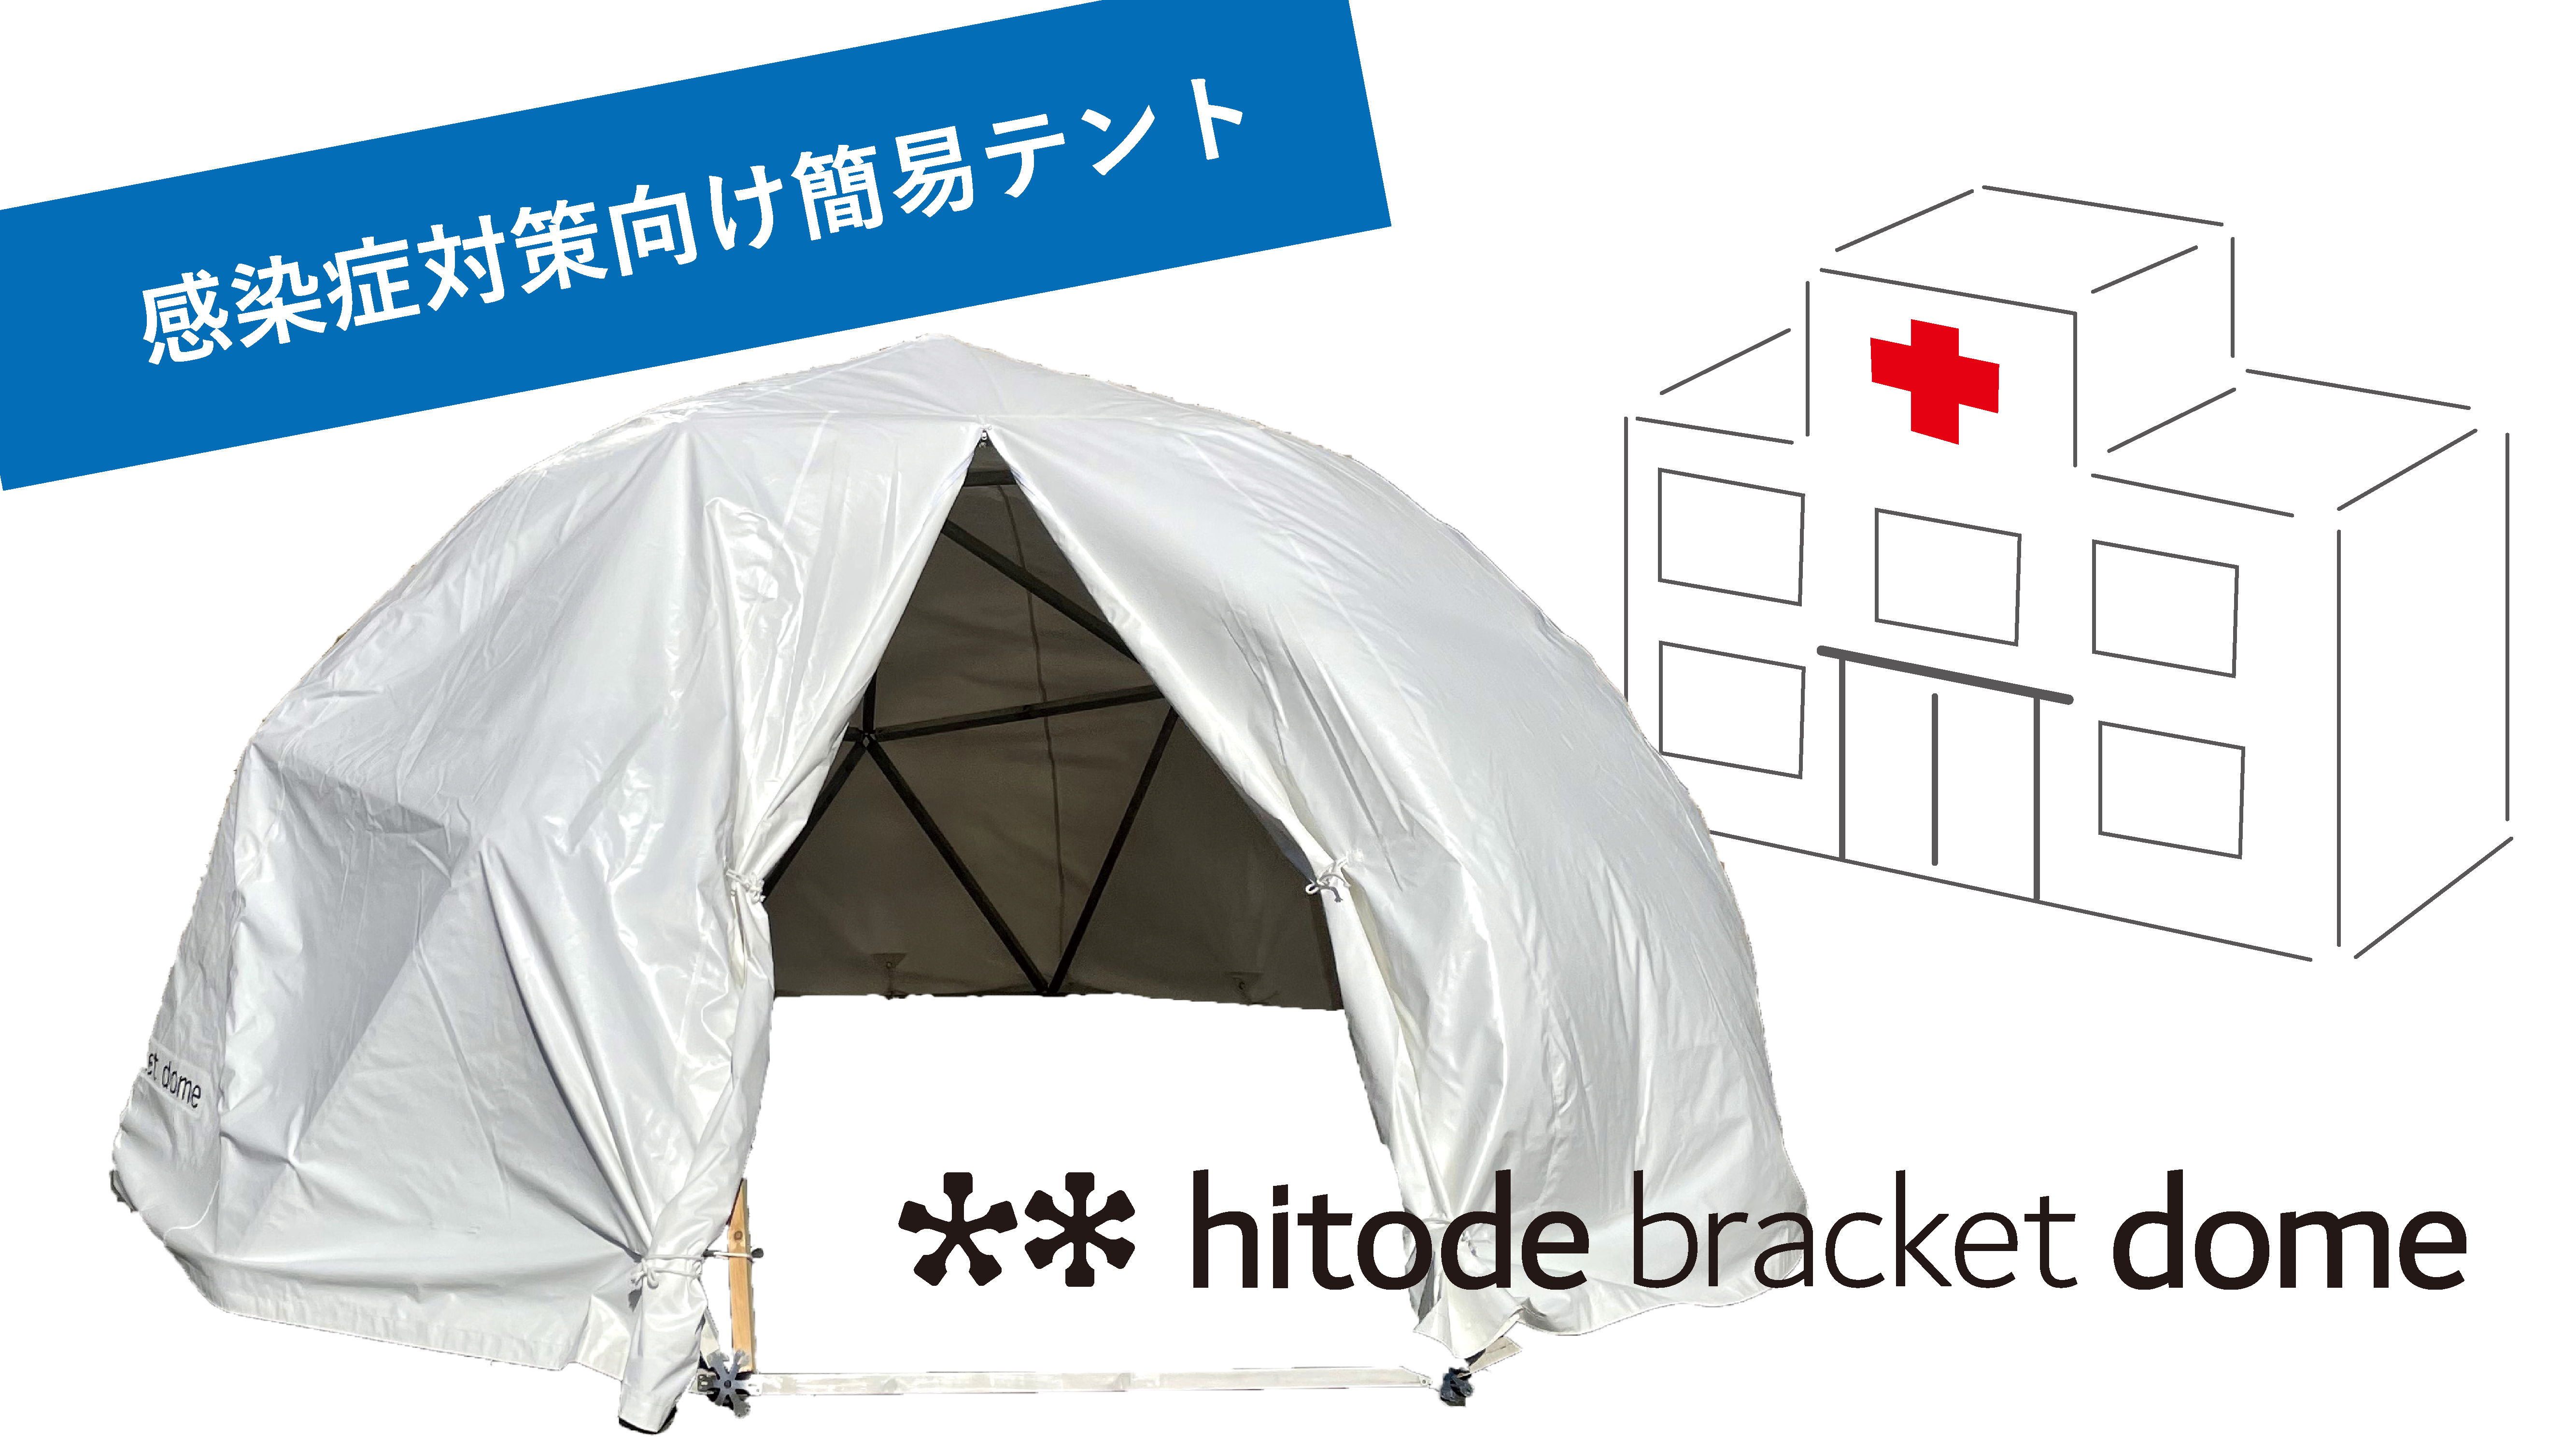 ドーム型テントの組み立てキット 半球ドームの空間を感染症対策にも活用 加藤数物のプレスリリース